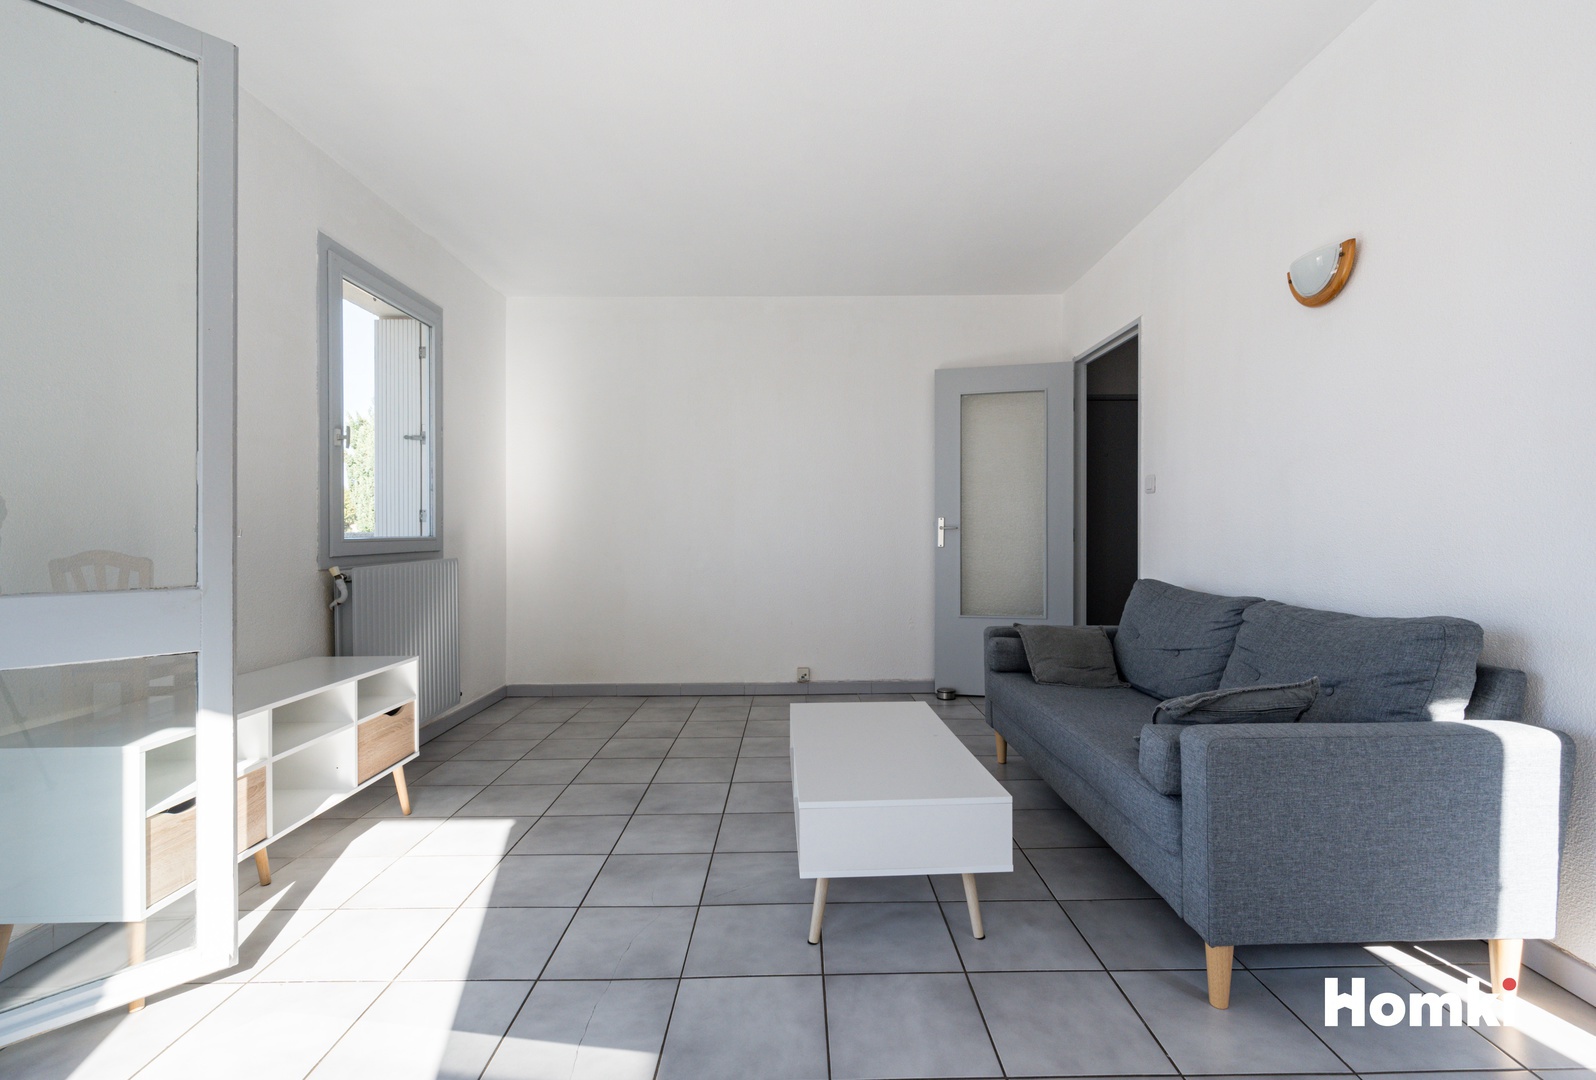 Homki - Vente Appartement  de 45.0 m² à Perpignan 66000